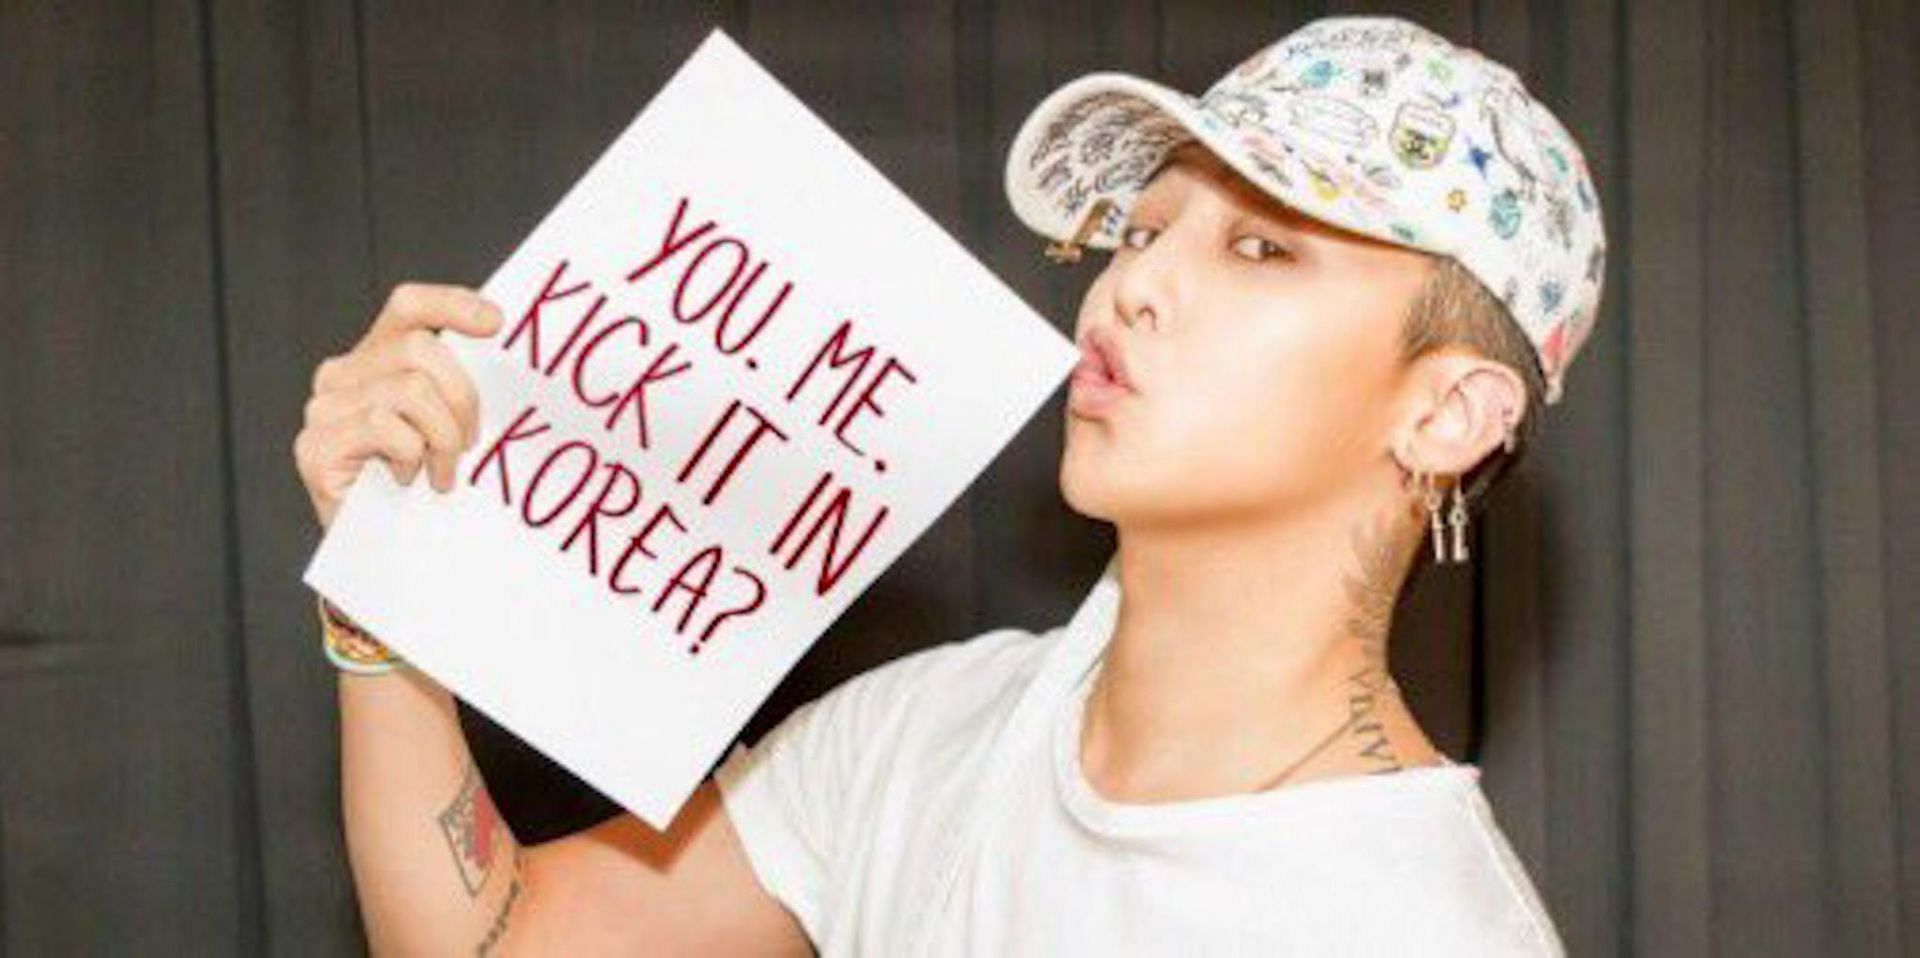 G-Dragon, King of K-Pop. (Image via Twitter/@IBDRGN)